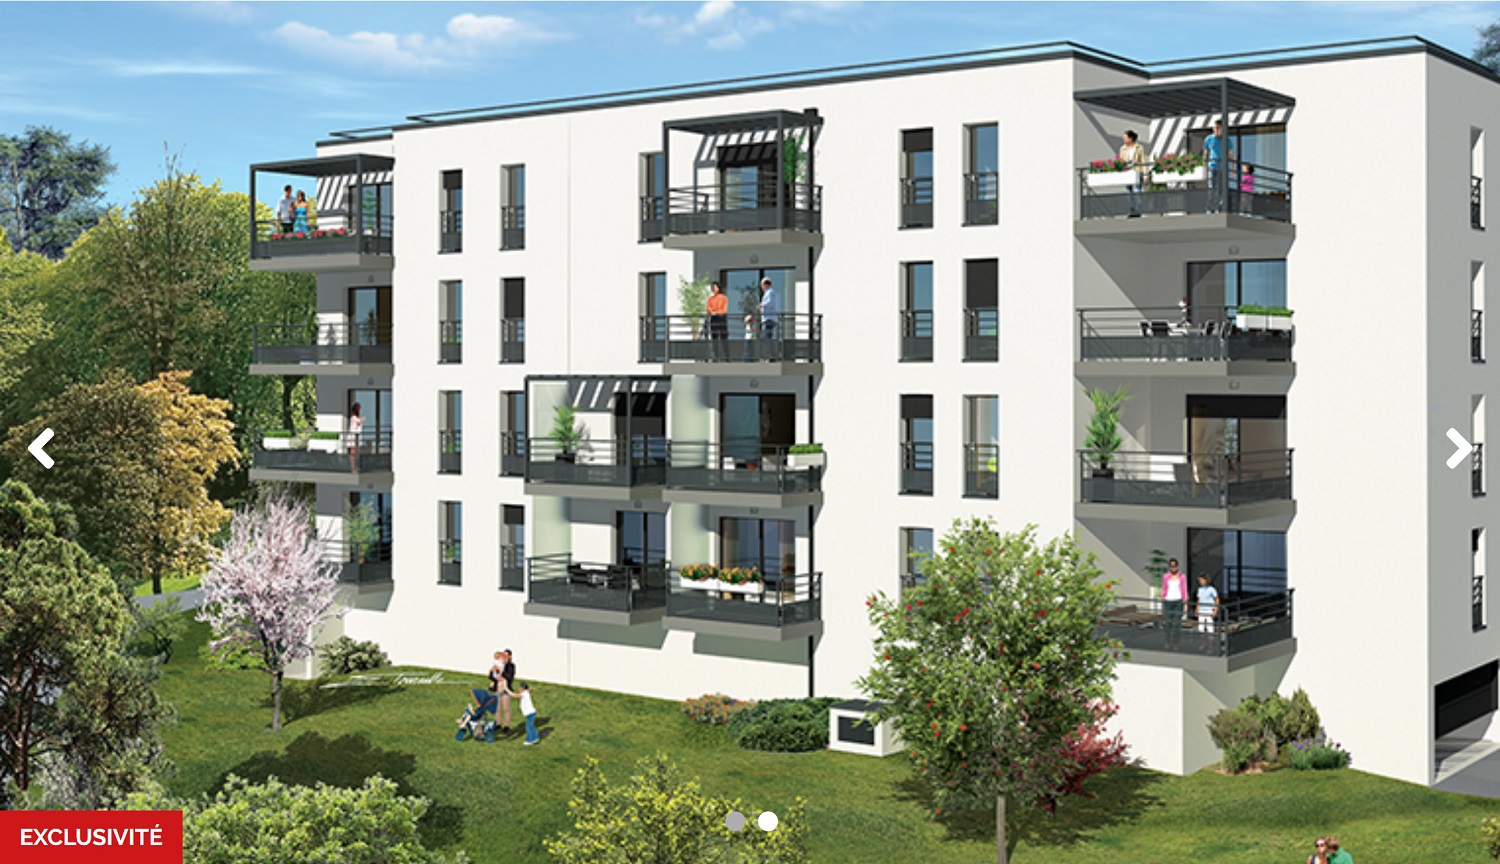 Programme immobilier PI5 appartement à Saint Didier au Mont d or (69370) 